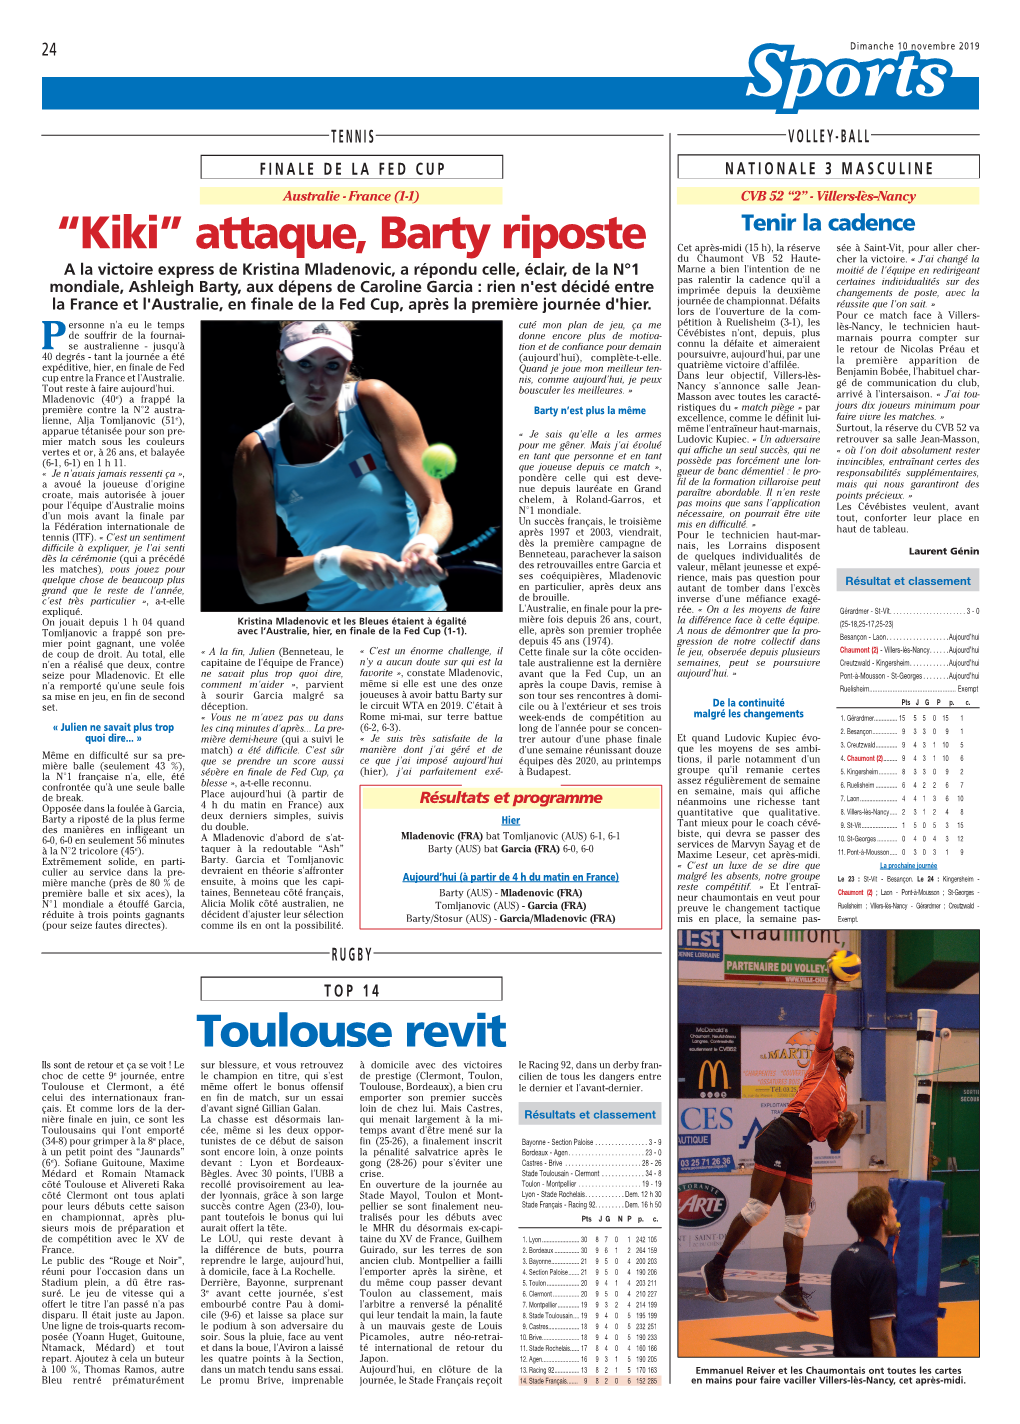 “Kiki” Attaque, Barty Riposte Toulouse Revit